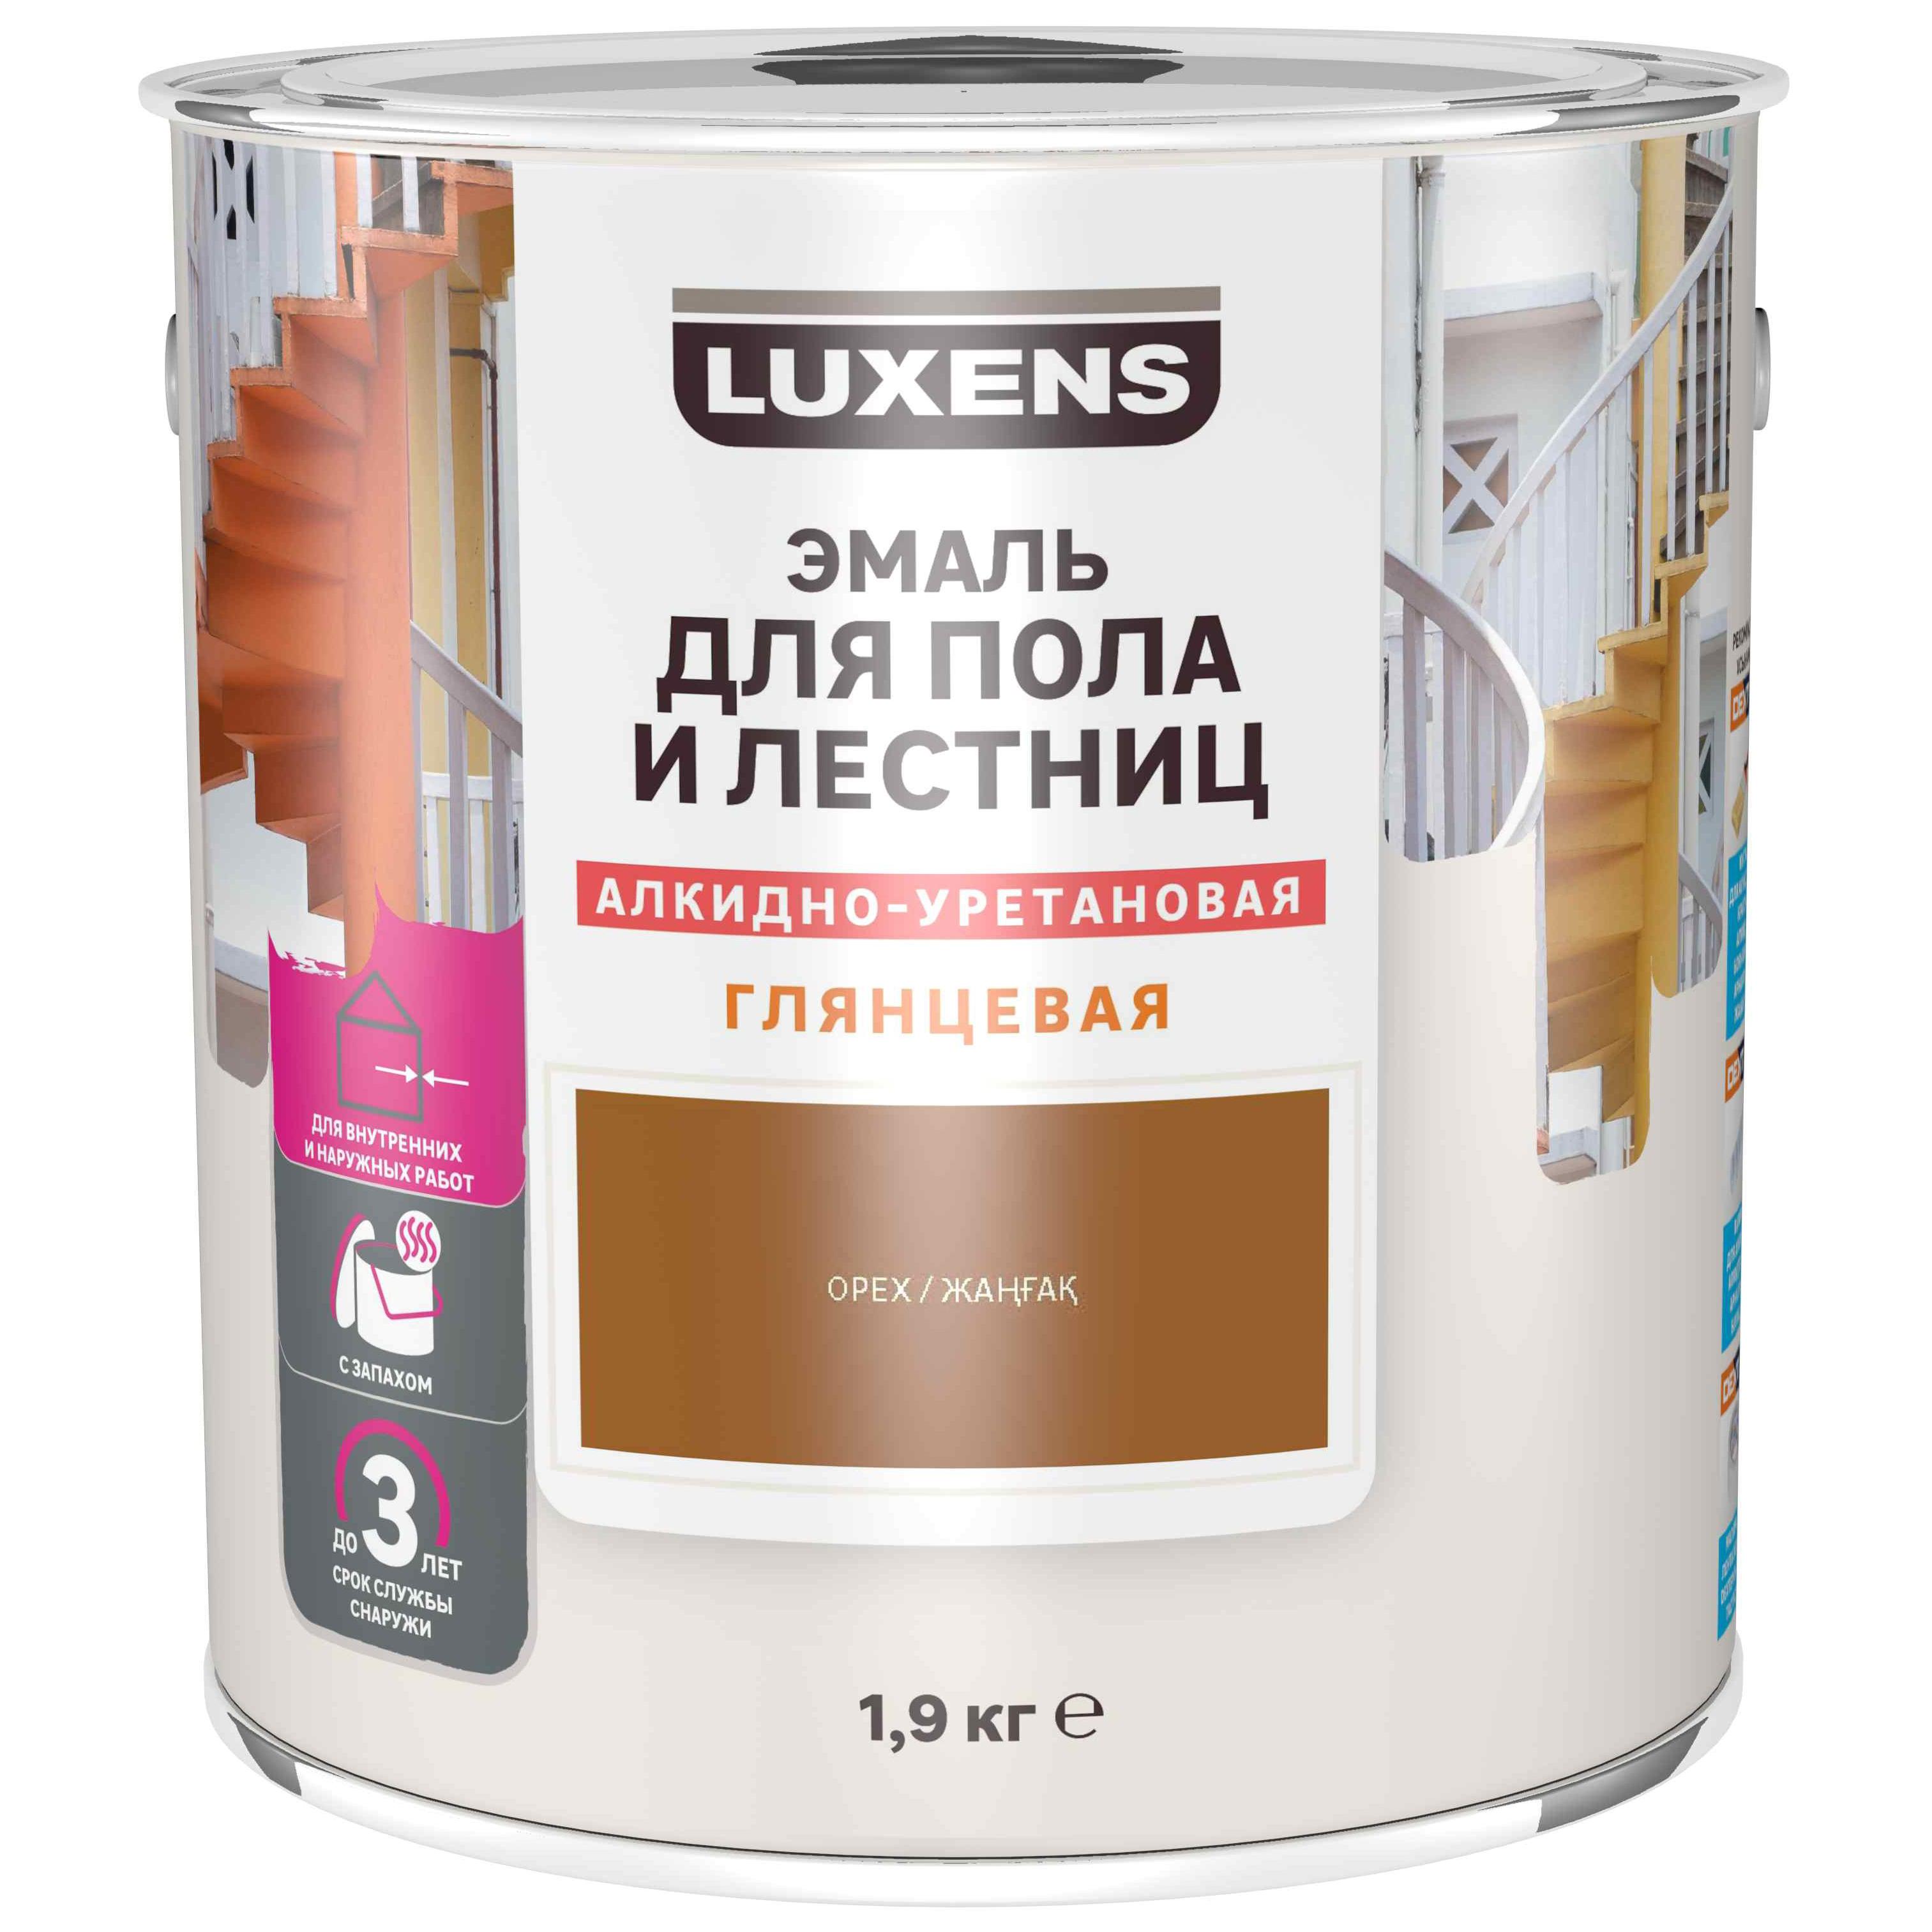 Эмаль для пола и лестниц алкидно-уретановая Luxens цвет орех 1.9 кг .